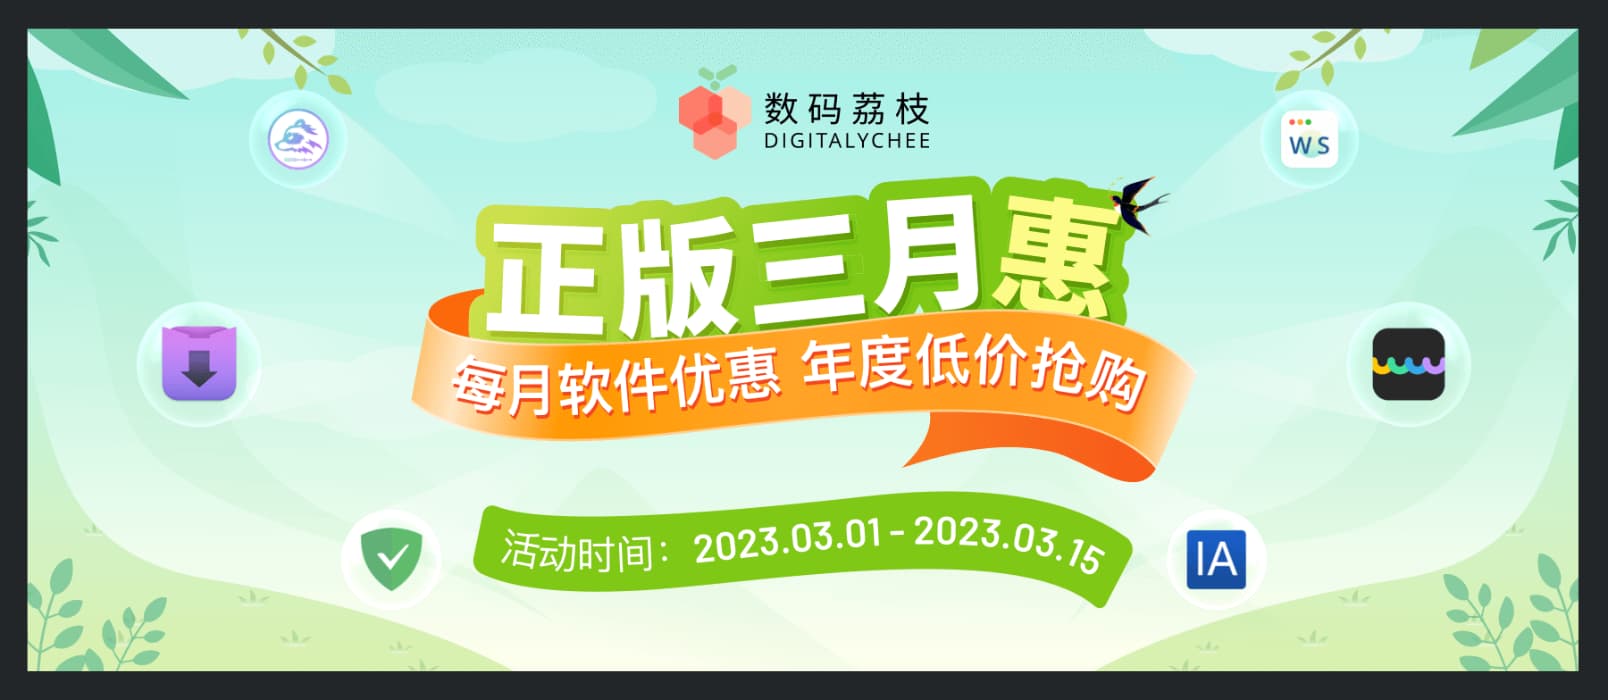 数码荔枝 3 月正版软件优惠：Downie、UPDF、Office 等 7 折起 1